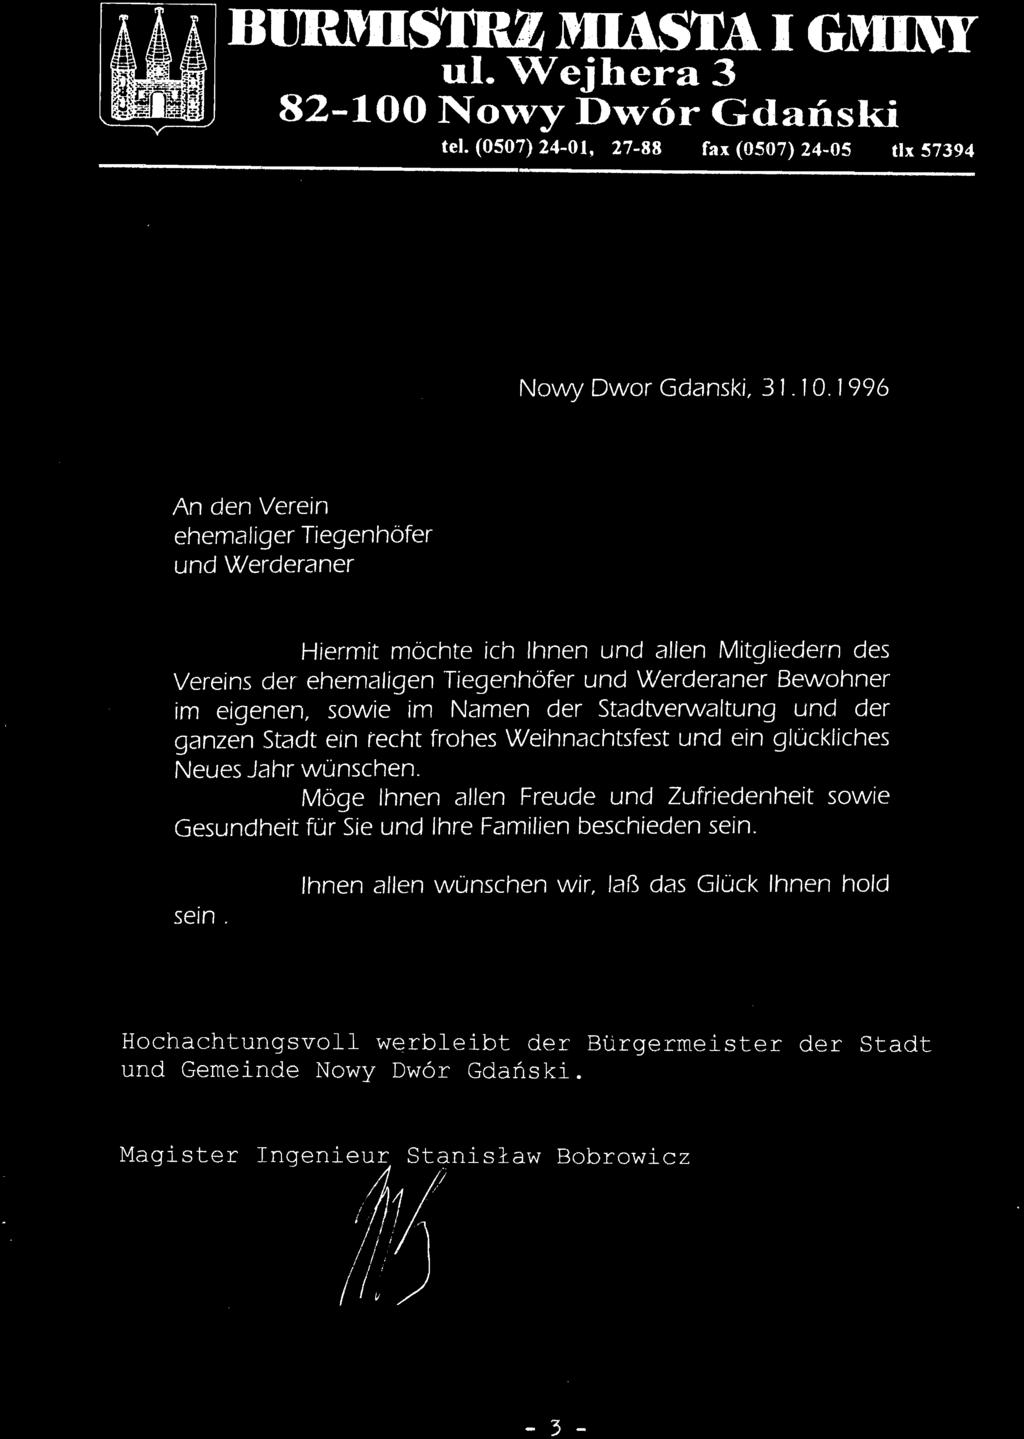 BlJRMISmz MIASTA I GMINY 01. Wejhera 3 82-100 No,",y D'\Vor Gdaiiski tel. (0507) 24-01, 27-88 fax (0507) 24-05 tlx 57394 Nowy Dwor Gdanski, 3 1. 10.